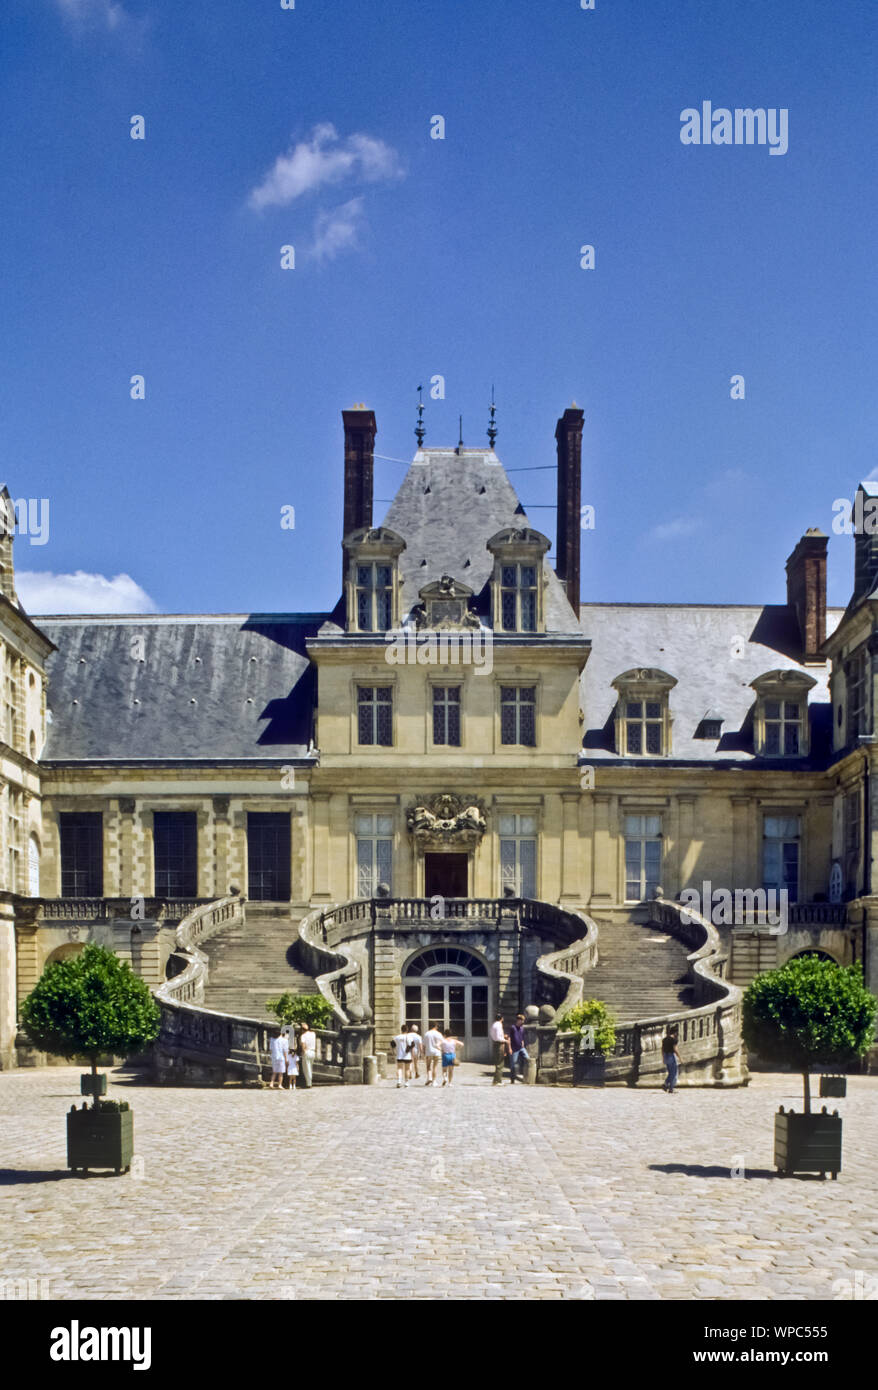 Das Schloss Fontainebleau in Fontainebleau, Département Seine-et-Marne, ist ein französisches Schloss rund 60 km südlich von Paris, das zeitweilig unt Stock Photo